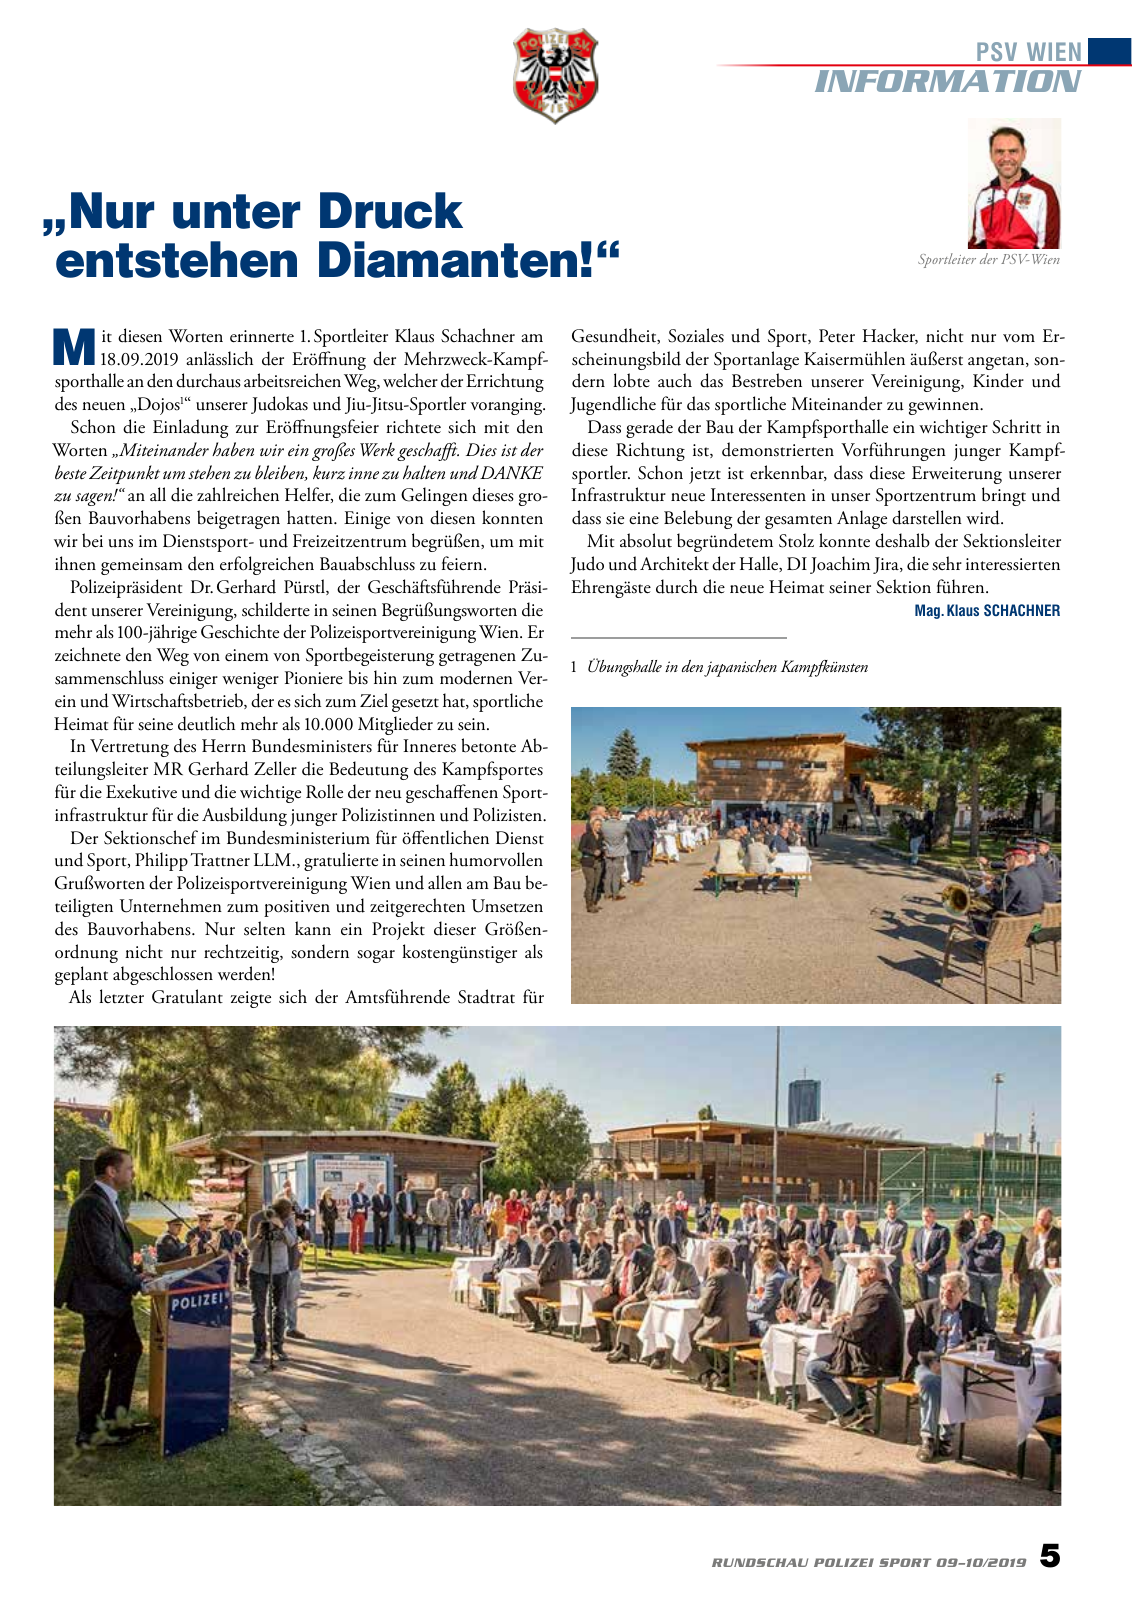 Vorschau Rundschau Polizei Sport 09-10/2019 Seite 5